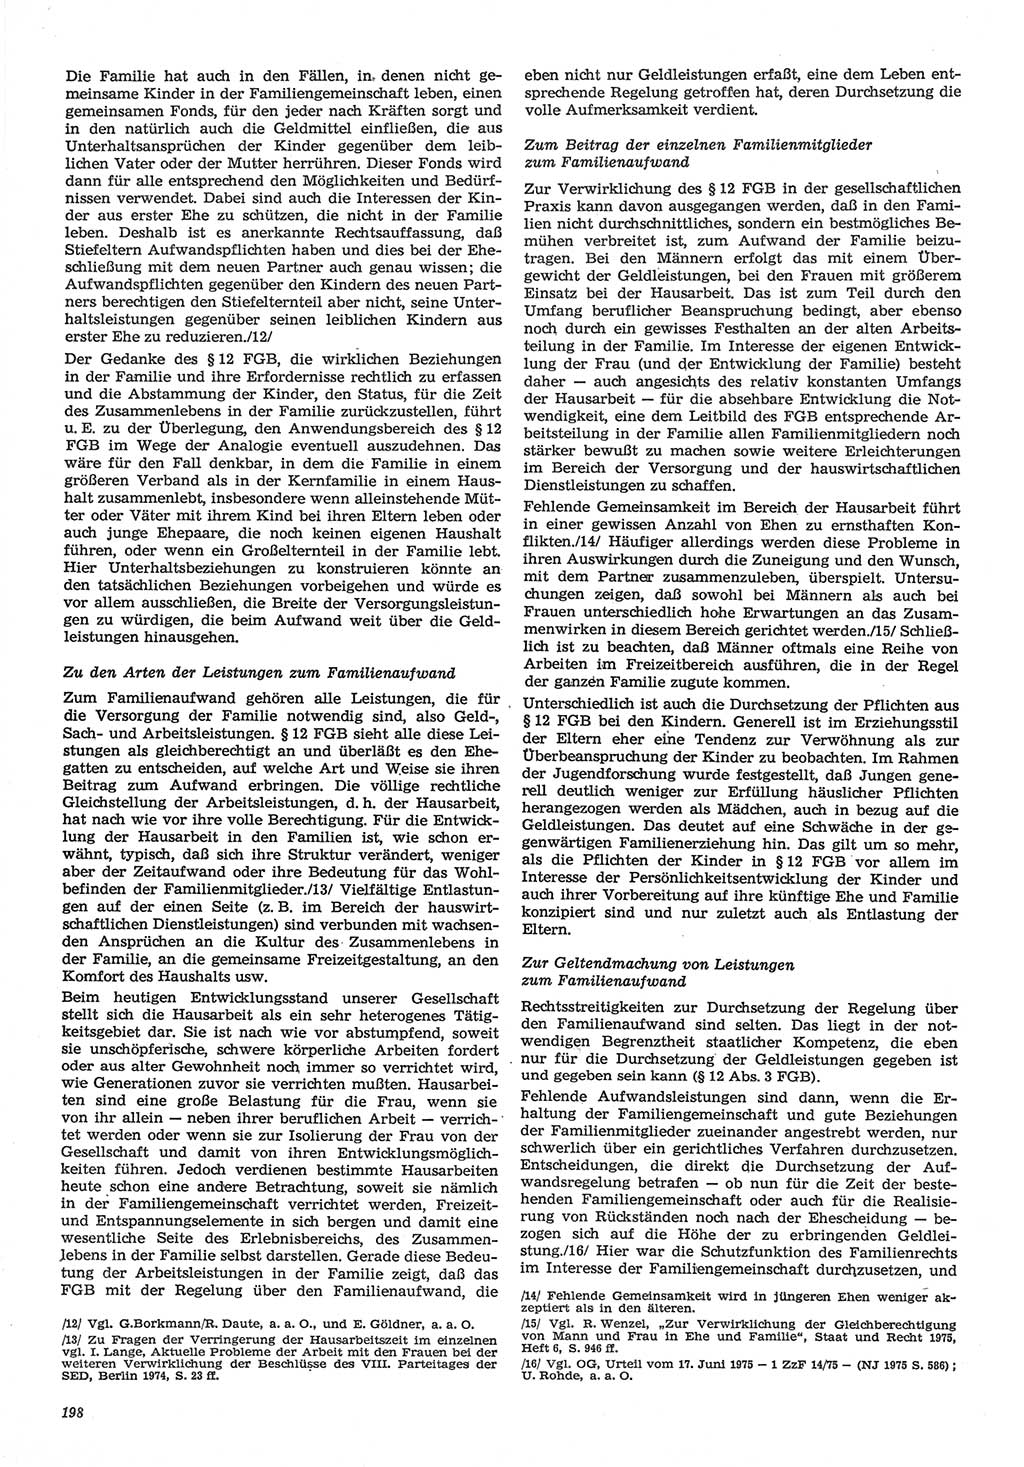 Neue Justiz (NJ), Zeitschrift für Recht und Rechtswissenschaft-Zeitschrift, sozialistisches Recht und Gesetzlichkeit, 31. Jahrgang 1977, Seite 198 (NJ DDR 1977, S. 198)